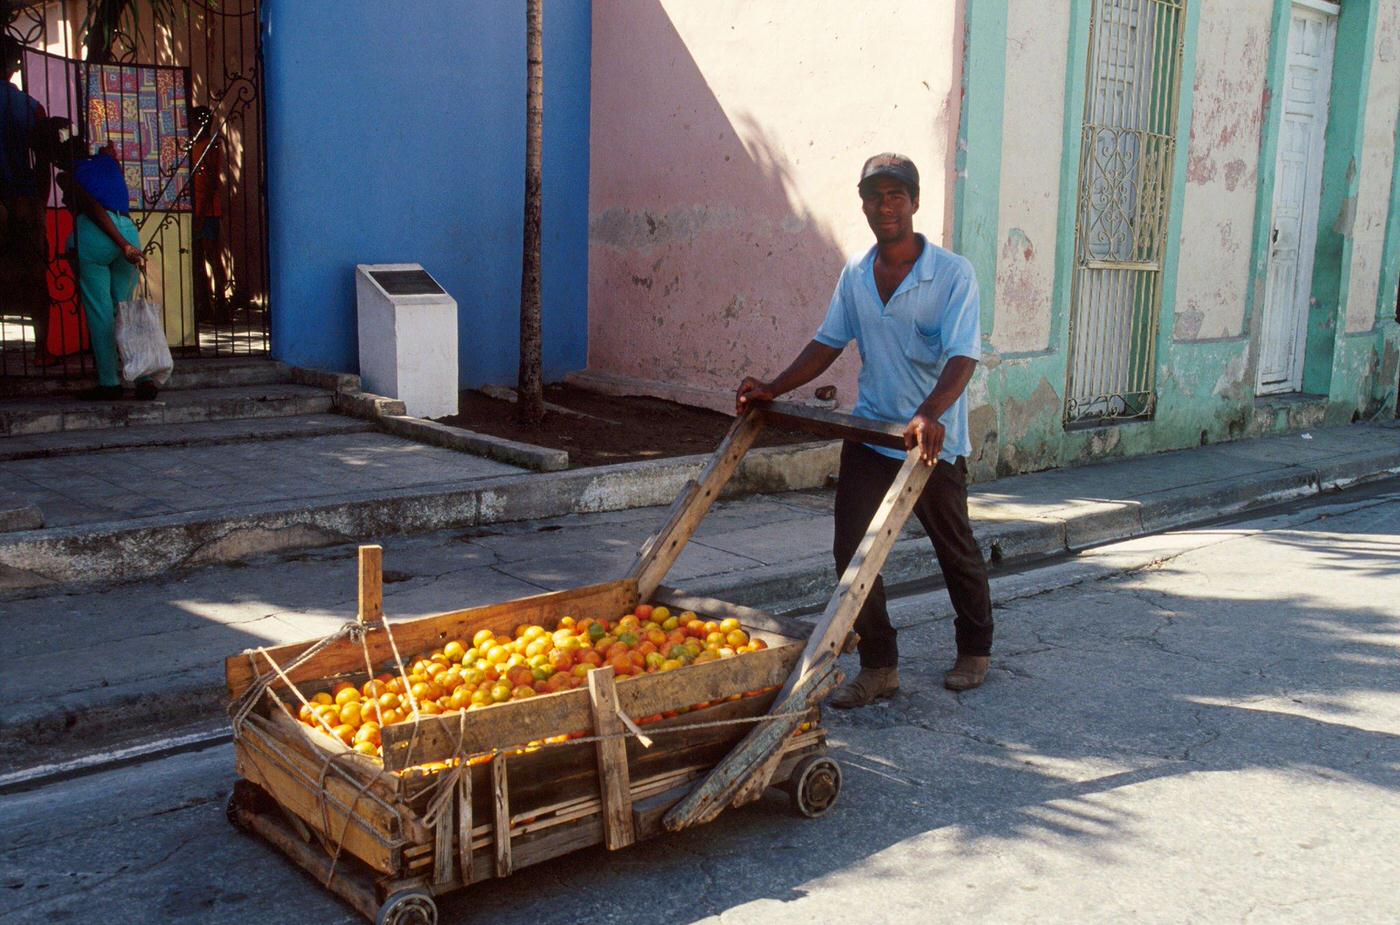 Cuban man carrying oranges on a cart, Cuba, 1990.